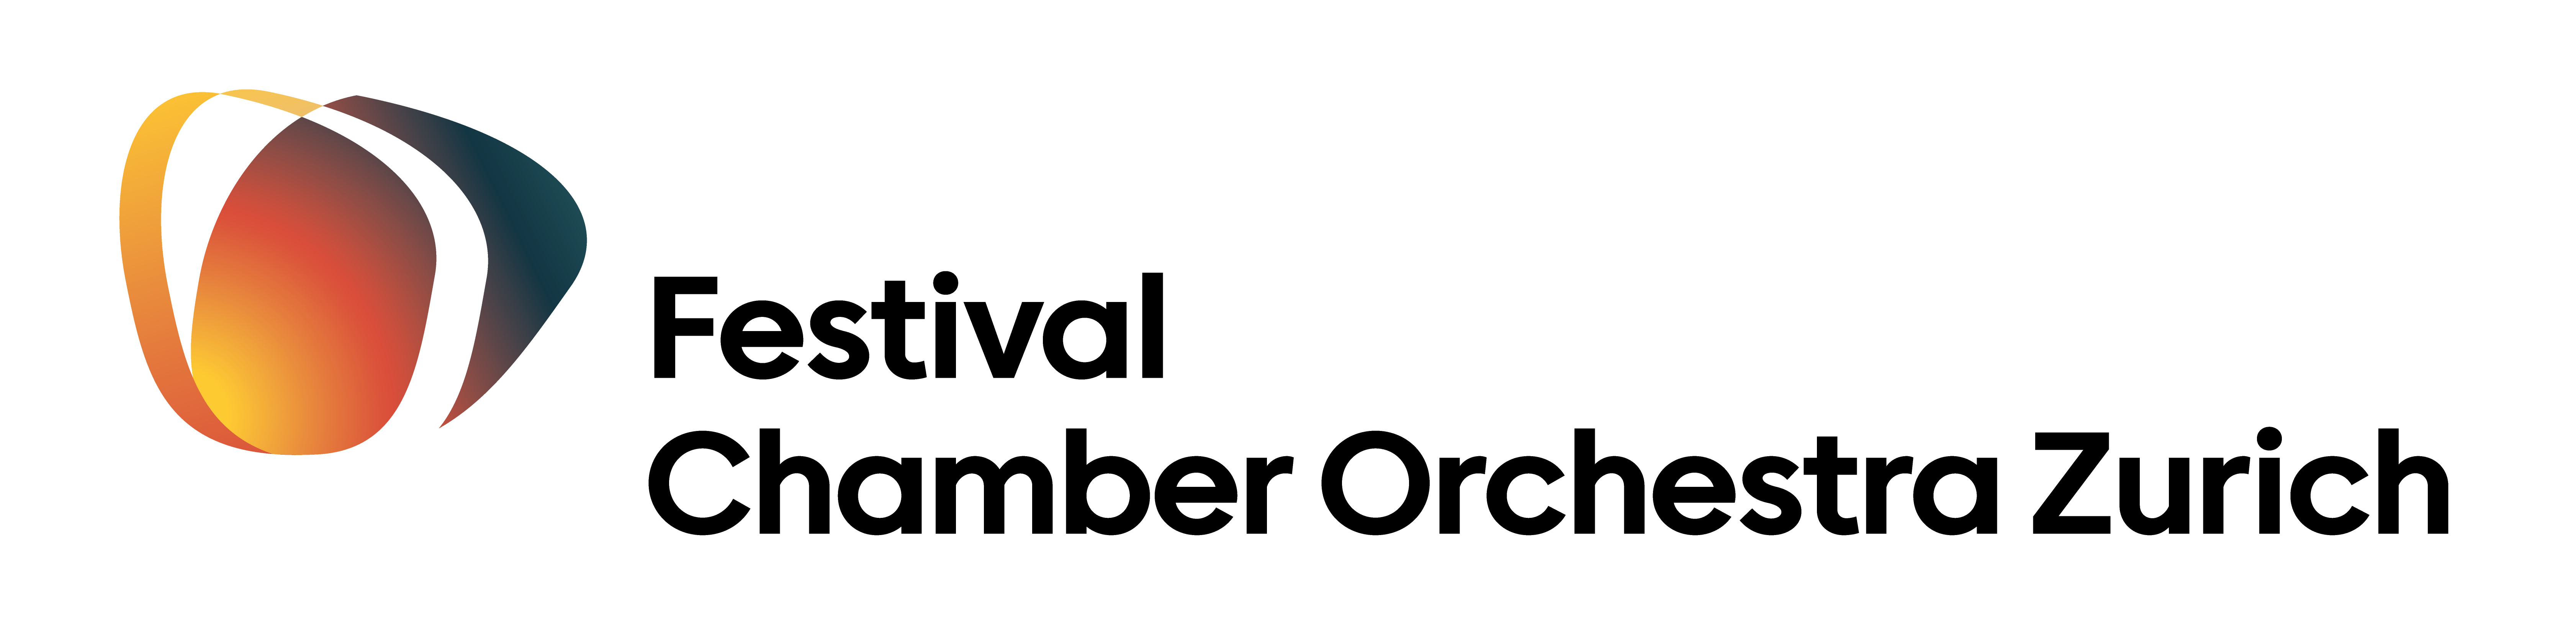 Festival Chamber Orchestra Zurich